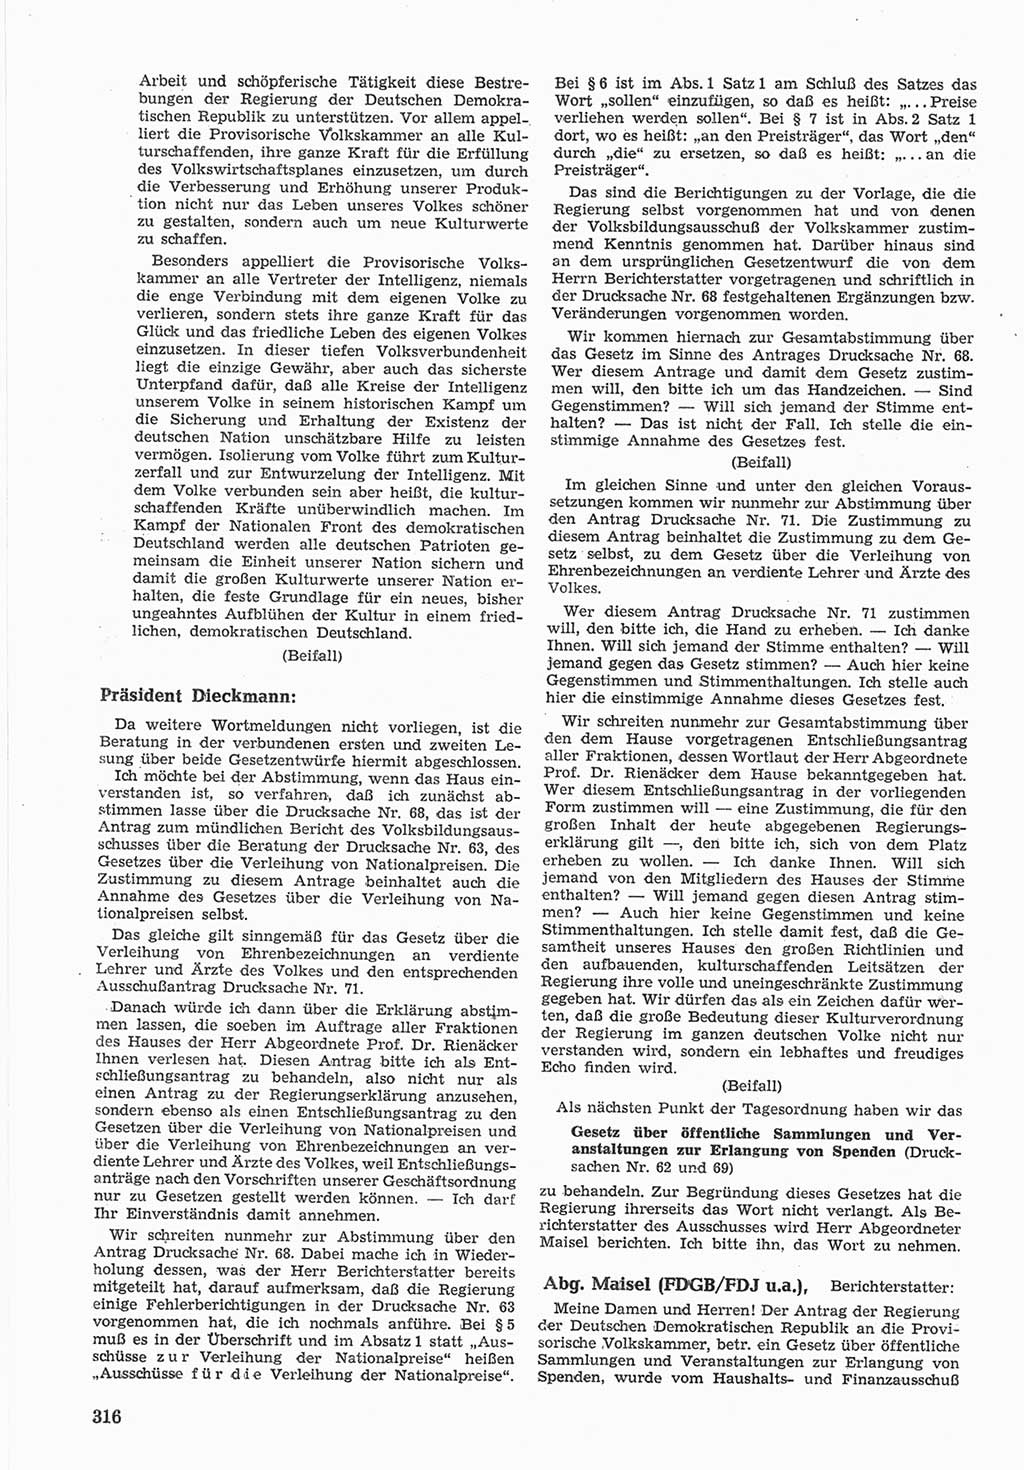 Provisorische Volkskammer (VK) der Deutschen Demokratischen Republik (DDR) 1949-1950, Dokument 330 (Prov. VK DDR 1949-1950, Dok. 330)